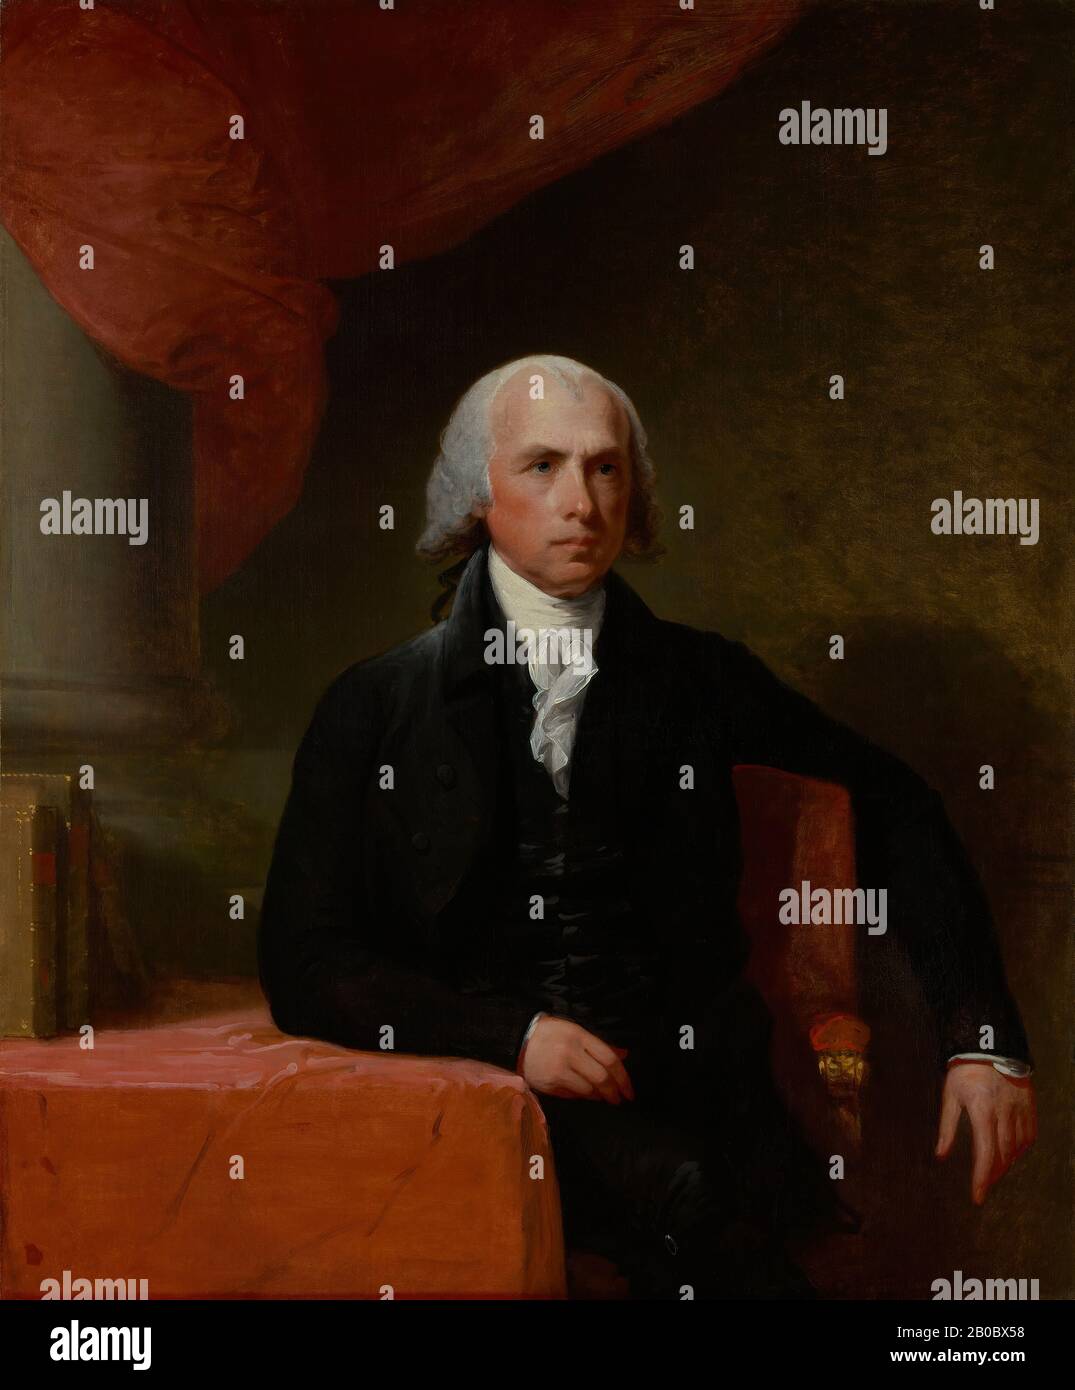 Gilbert Stuart, Porträt von James Madison, ca. 1805-57, Öl auf Leinwand, 48 1/2 Zoll x 39 3/4 Zoll (123,19 x 100,97 cm), begann Gilbert Stuart seine Porträts von Jefferson und Madison, während er in Washington, D.C. Lebte, Da er davon absah, Kopien zu erstellen, begann er mit dem Malen von Studien ihrer Gesichter, die er beibehielt. Danach nutzte er diese Lebensstudien, um Porträts in Öl zu malen. Stuart vollendete diese Hängebilder in Boston, nachdem er im Sommer 1805 auf Anregung des ehemaligen Senators von Massachusetts Jonathan Mason dorthin gezogen war, der versprach, ihn potenziellen Kunden vorzustellen. Stuarts Mot Stockfoto